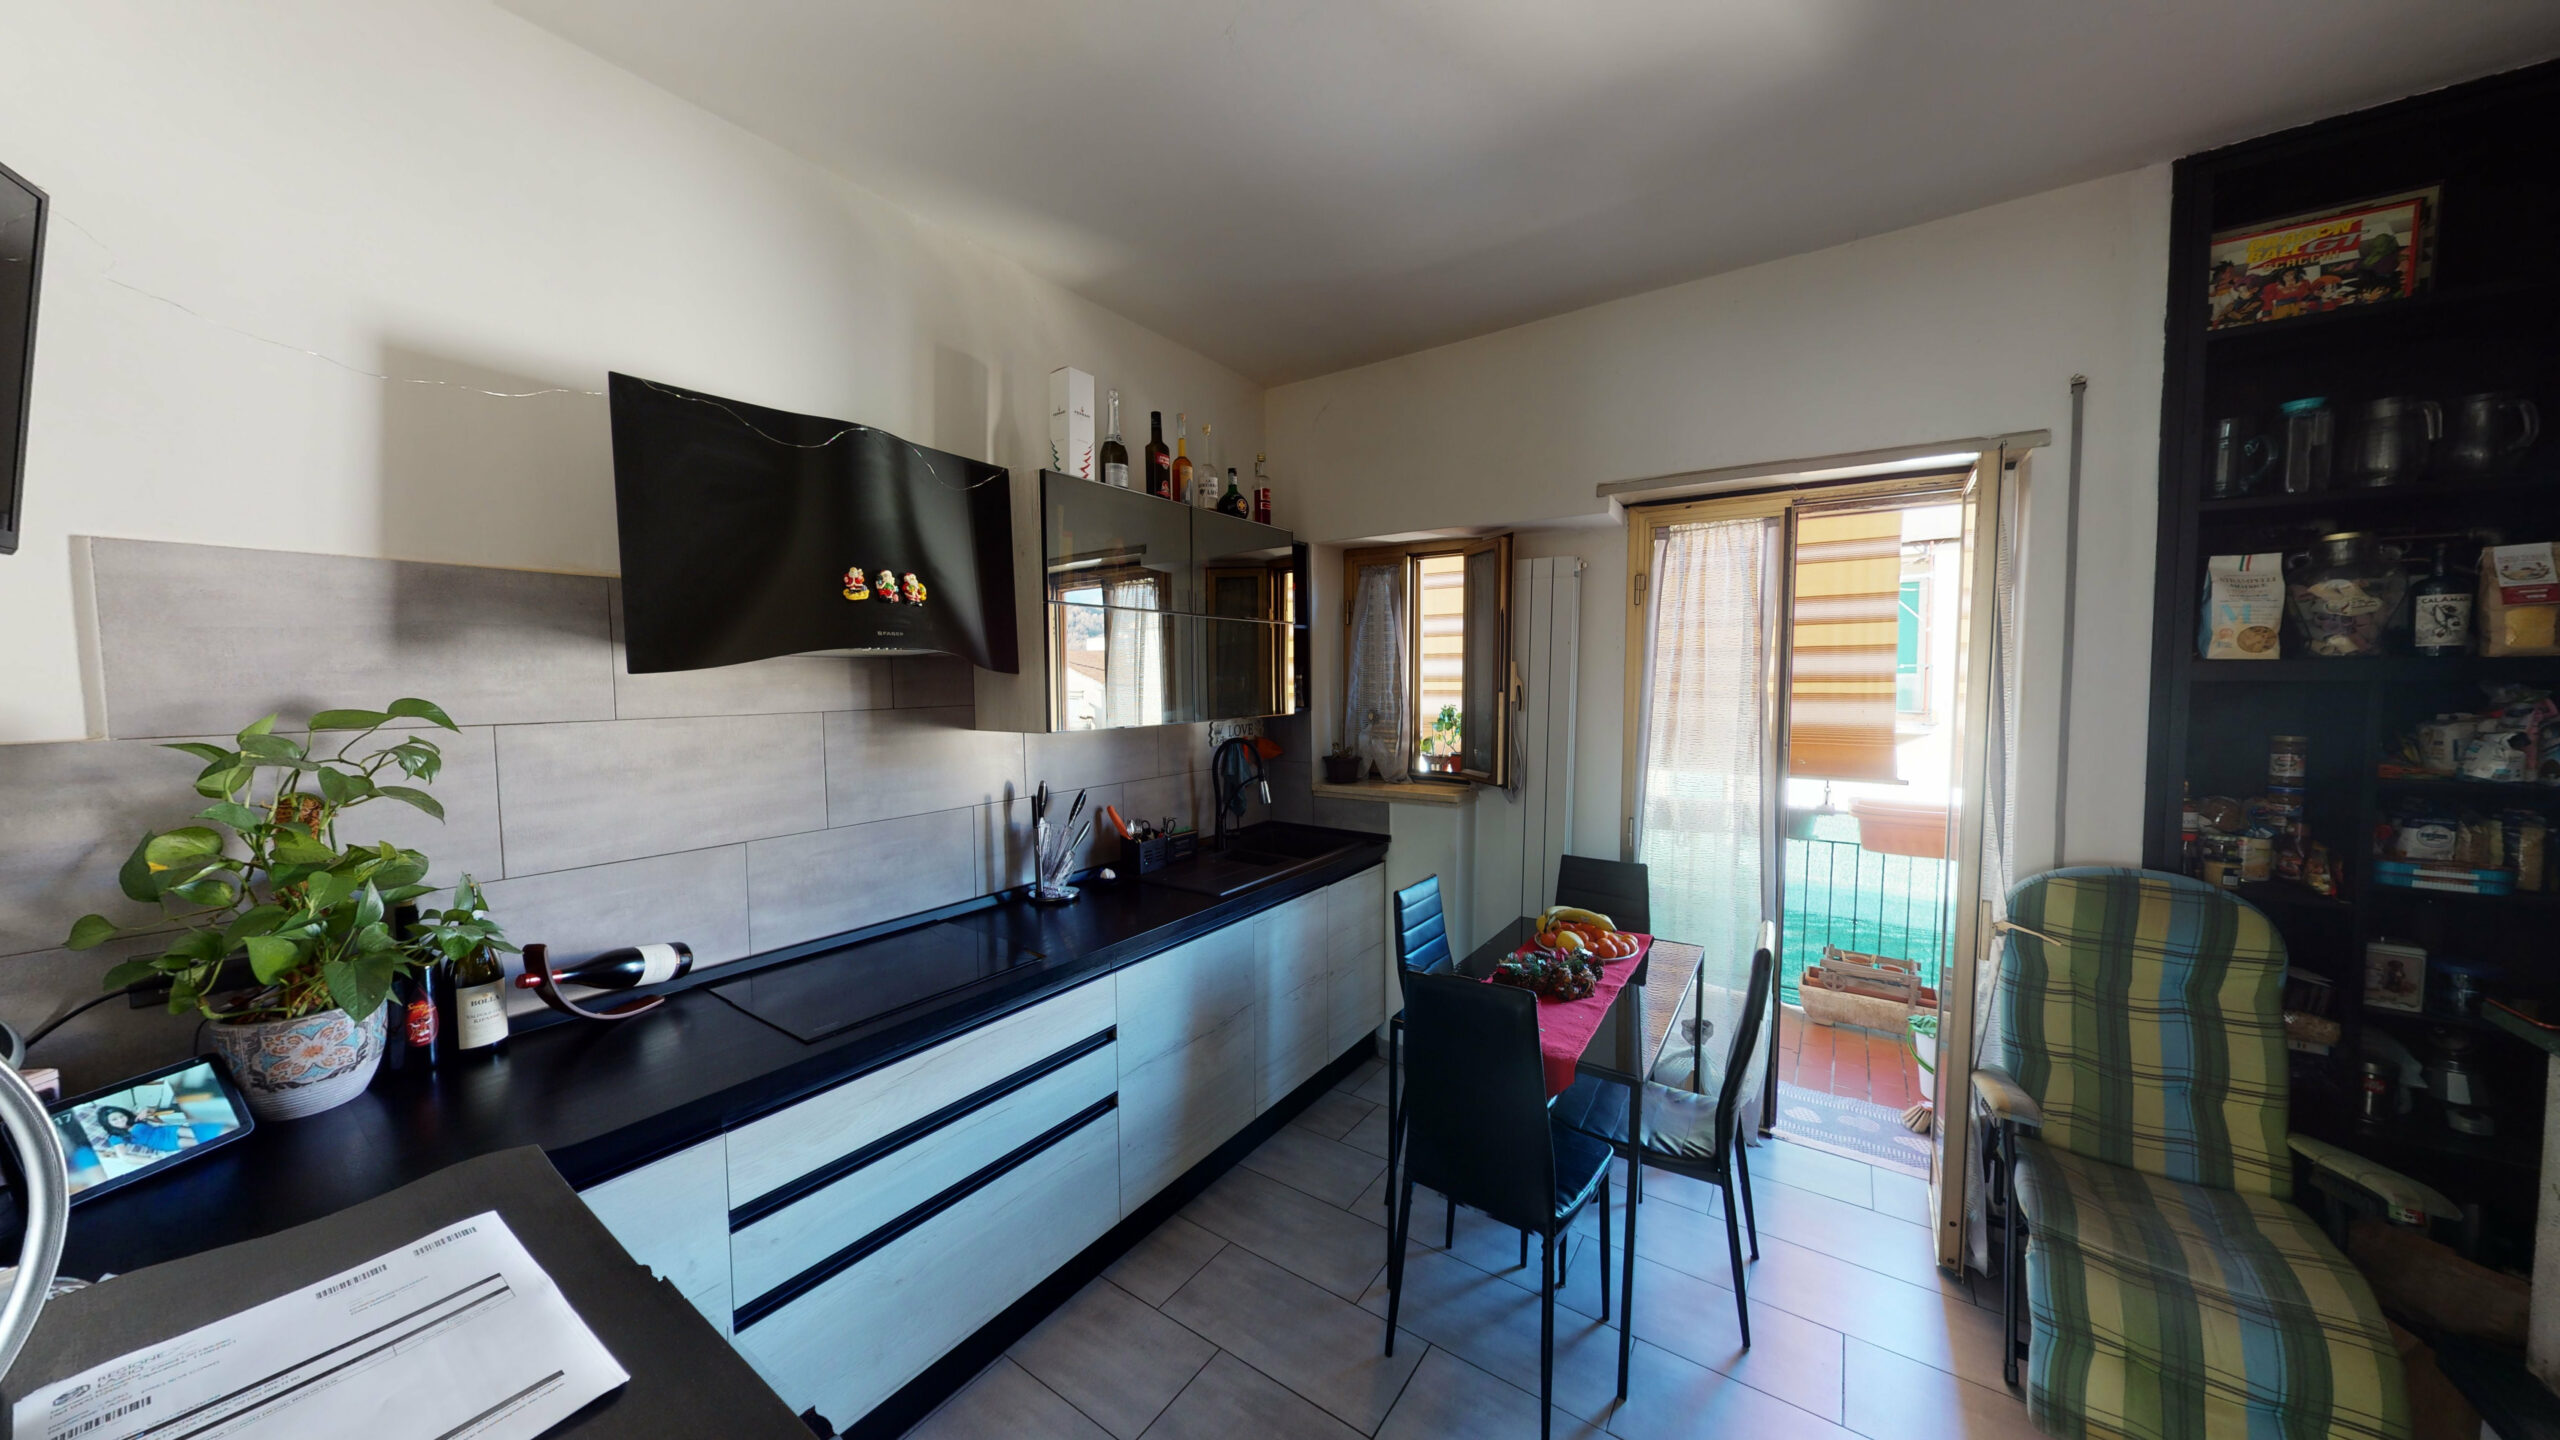 Rieti-Villa Reatina: Appartamento grandi dimensioni basso prezzo 110% approvato classe “C” (Rif. 2296)